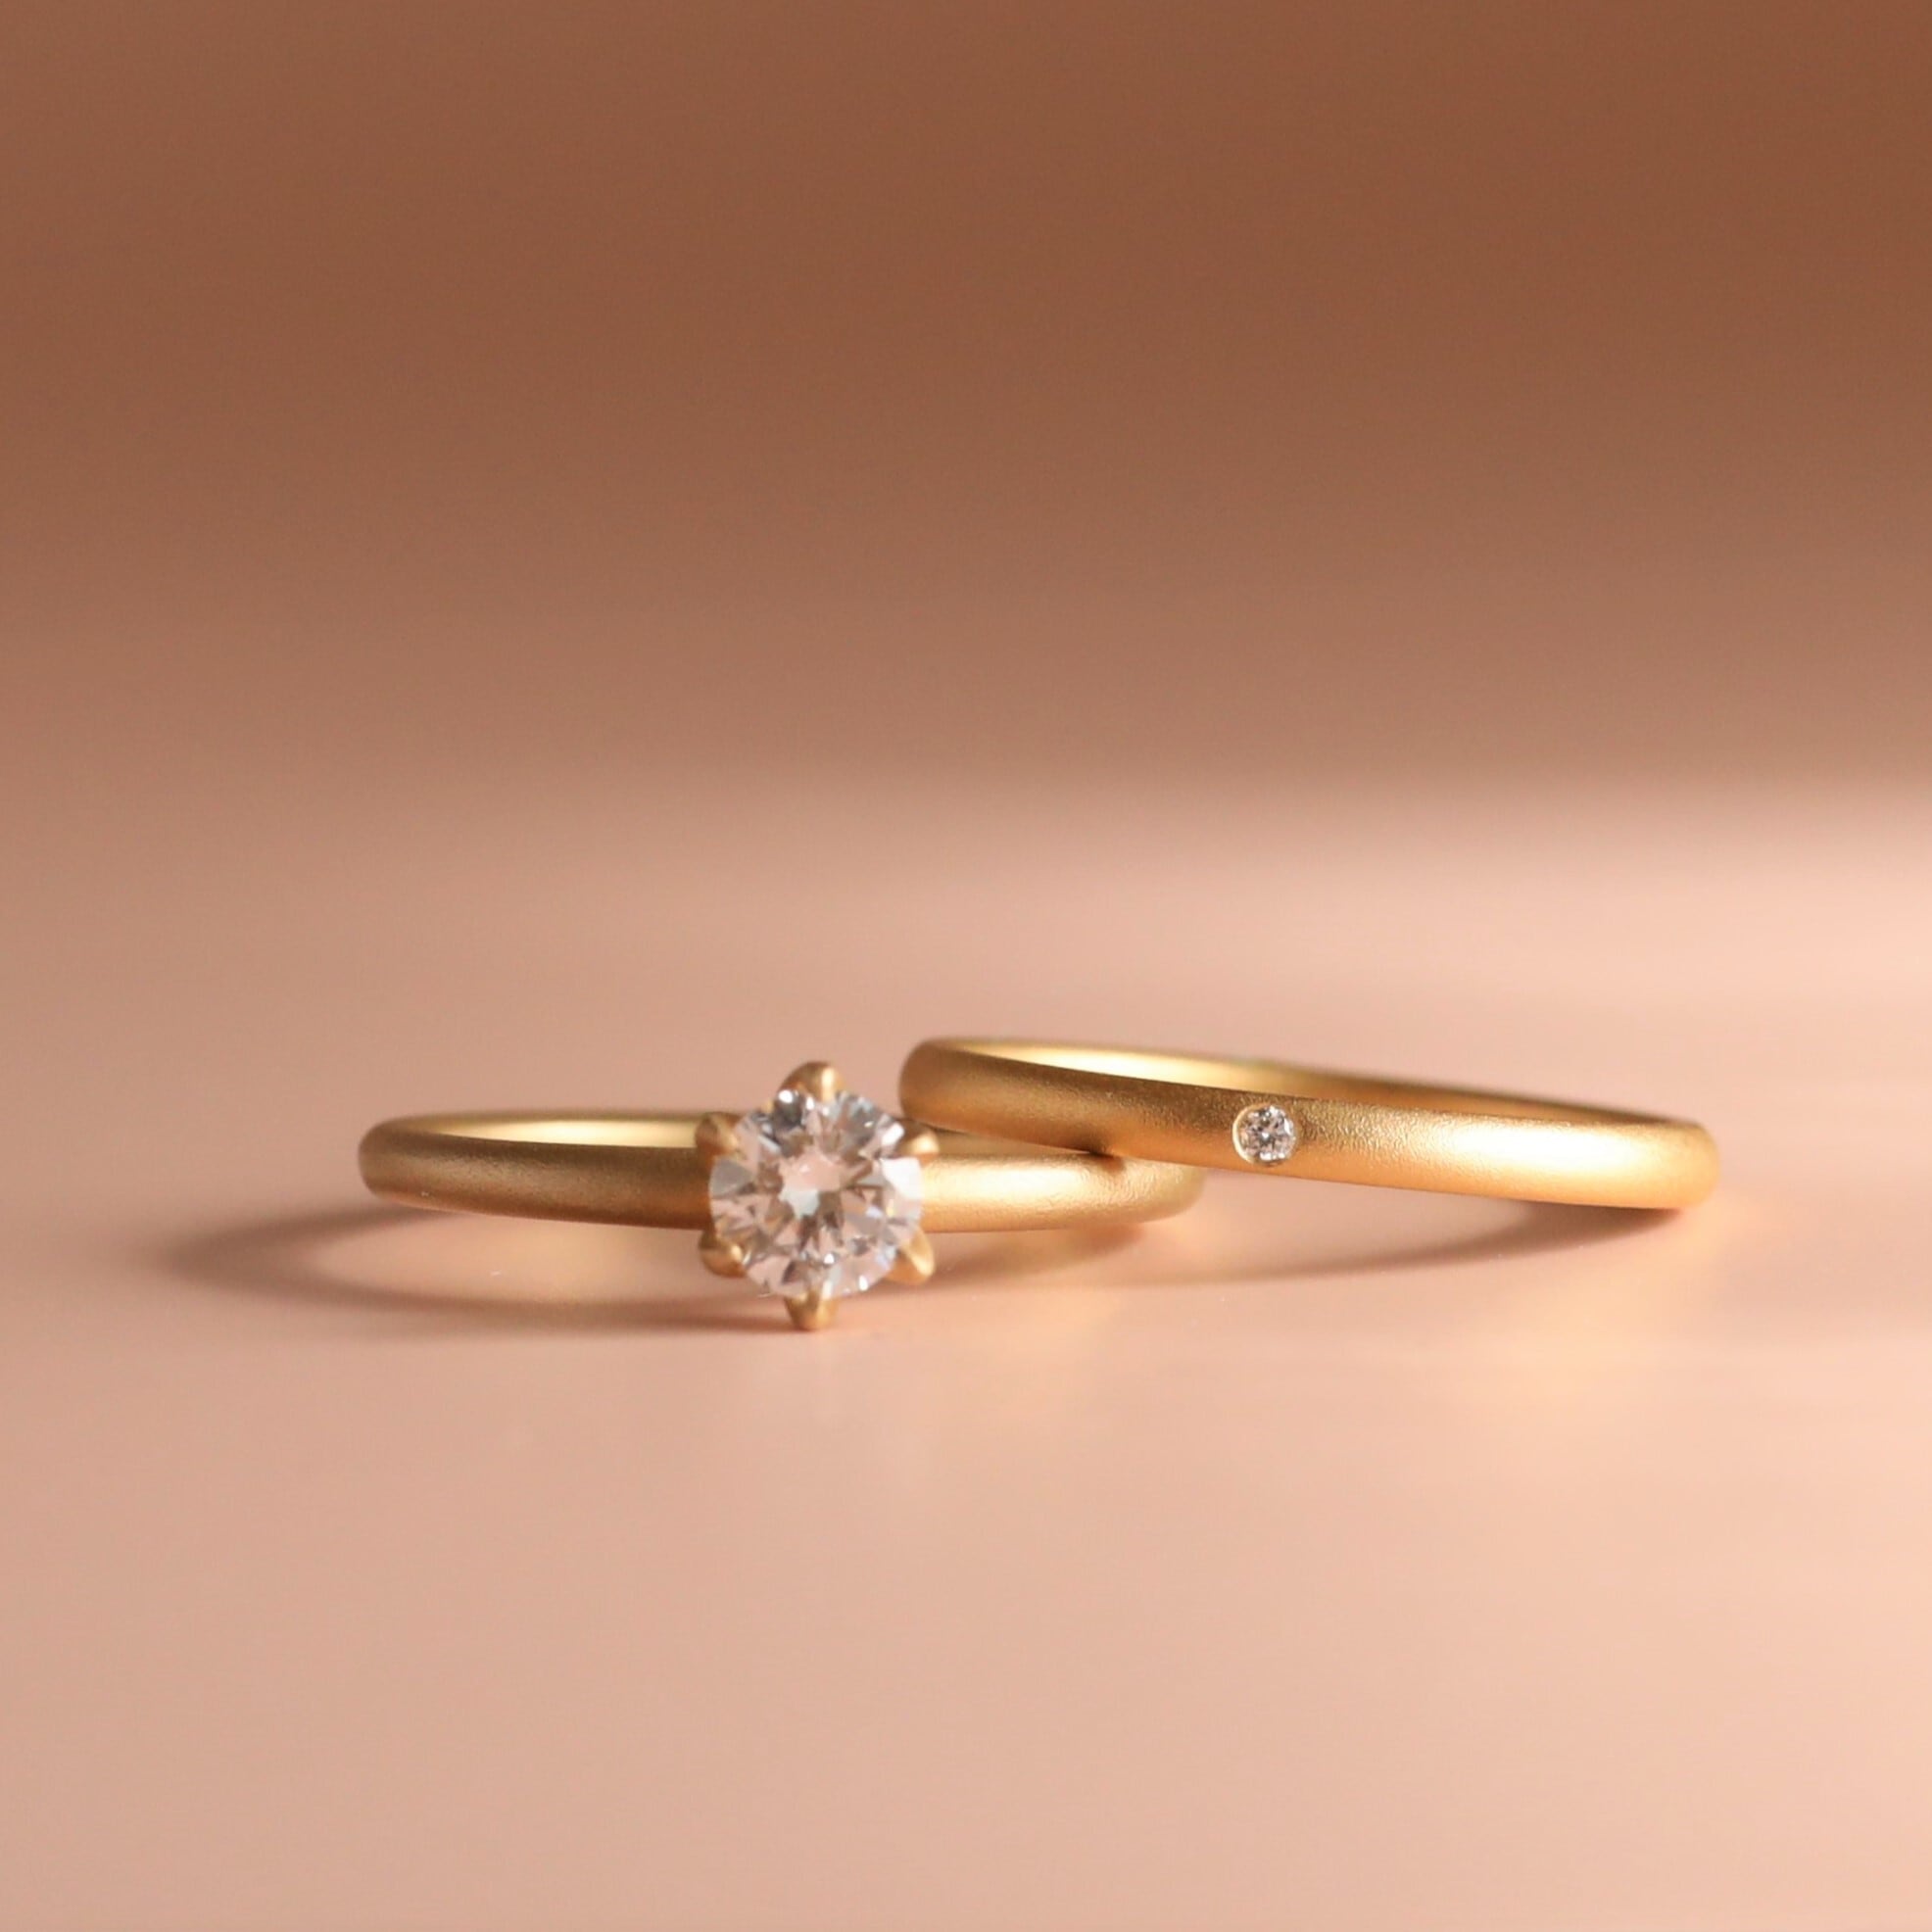 Tsubomiつぼみの指輪 ダイヤモンド0.ct エンゲージリング 婚約指輪